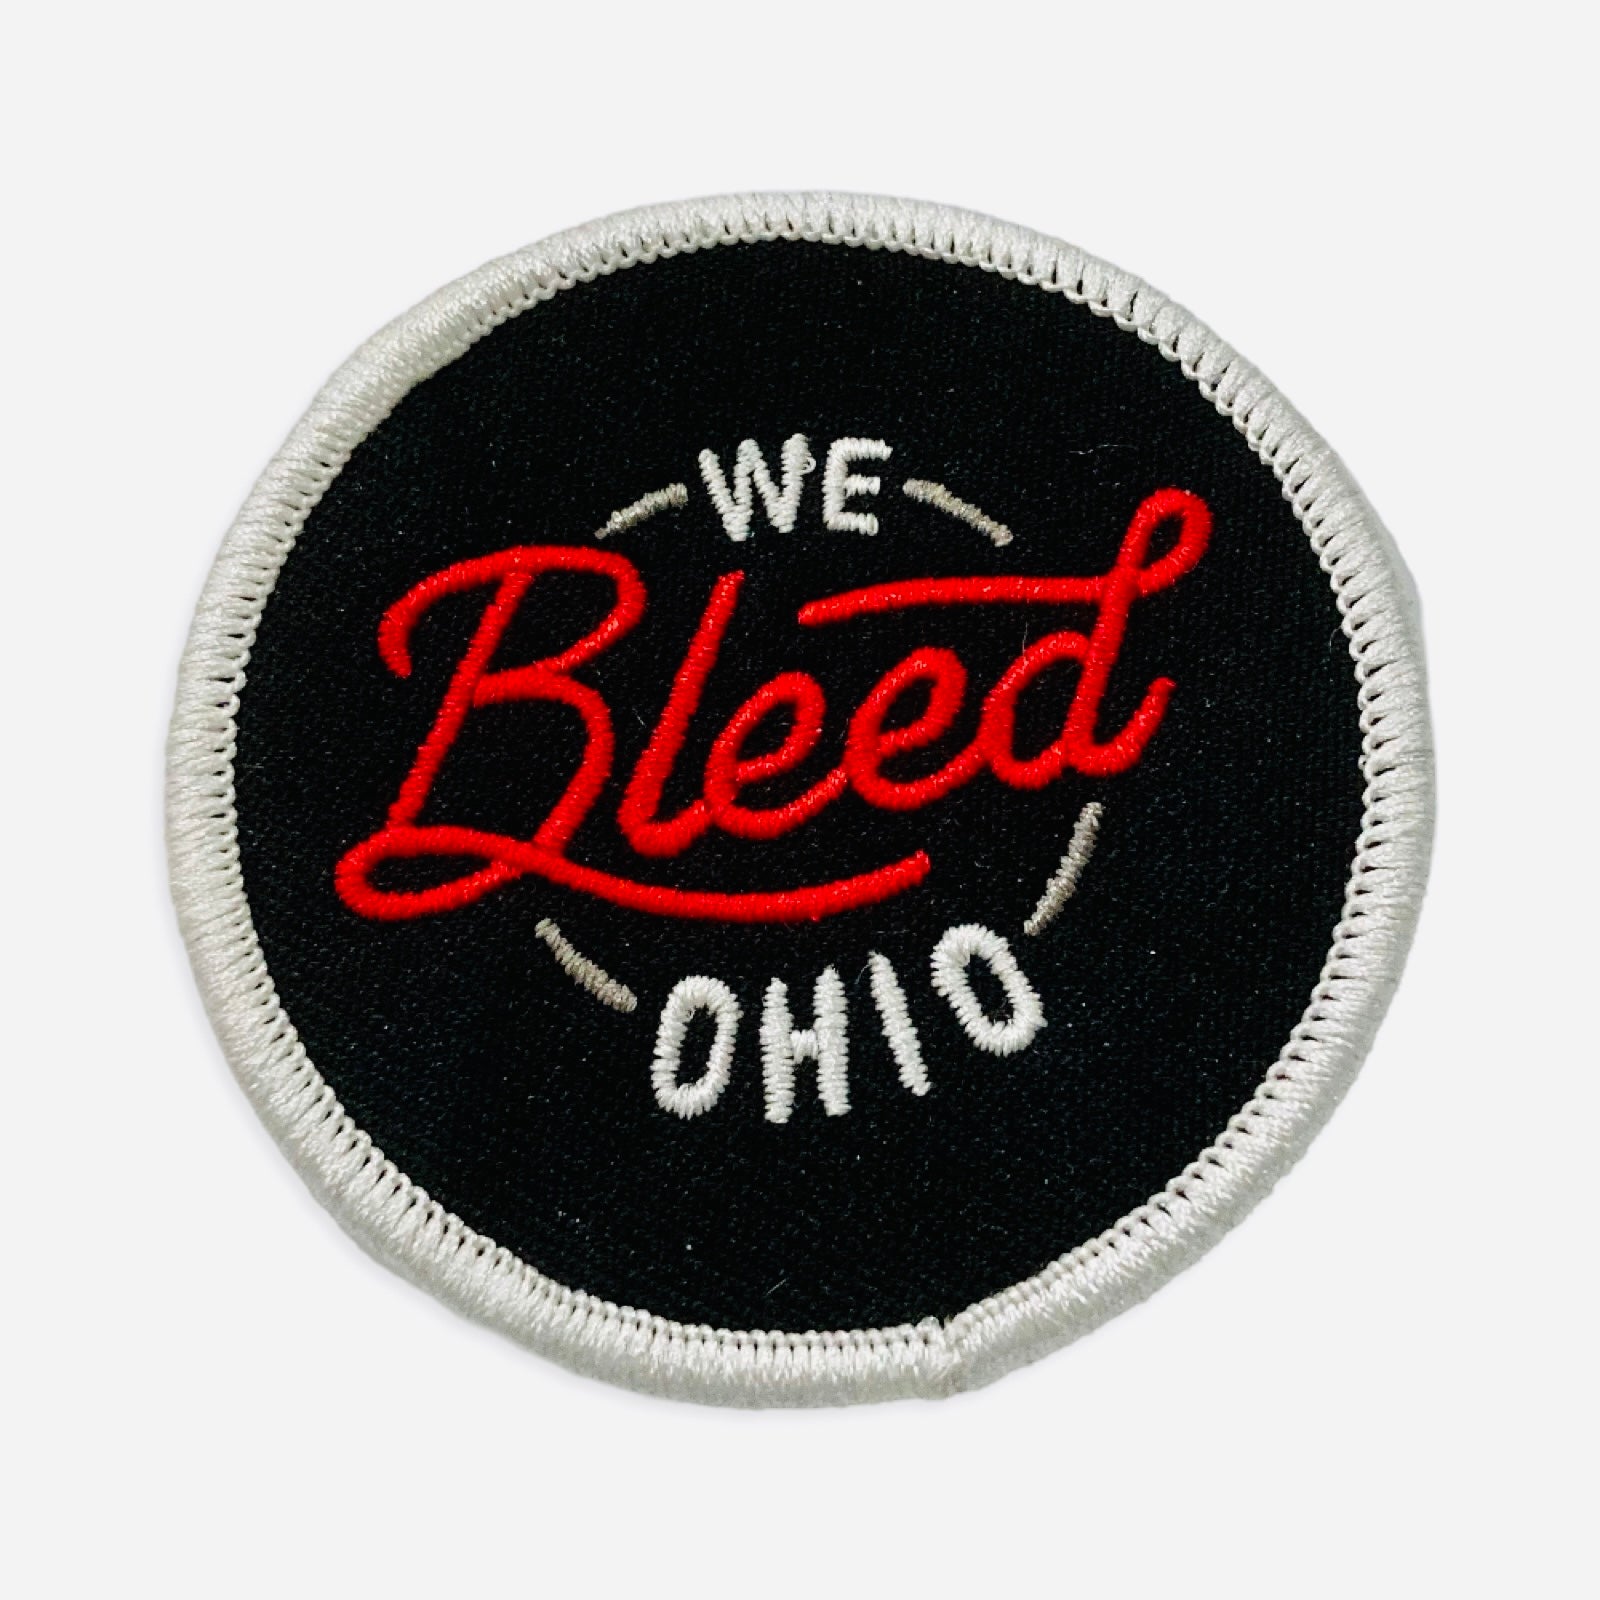 Patches - We Bleed Ohio